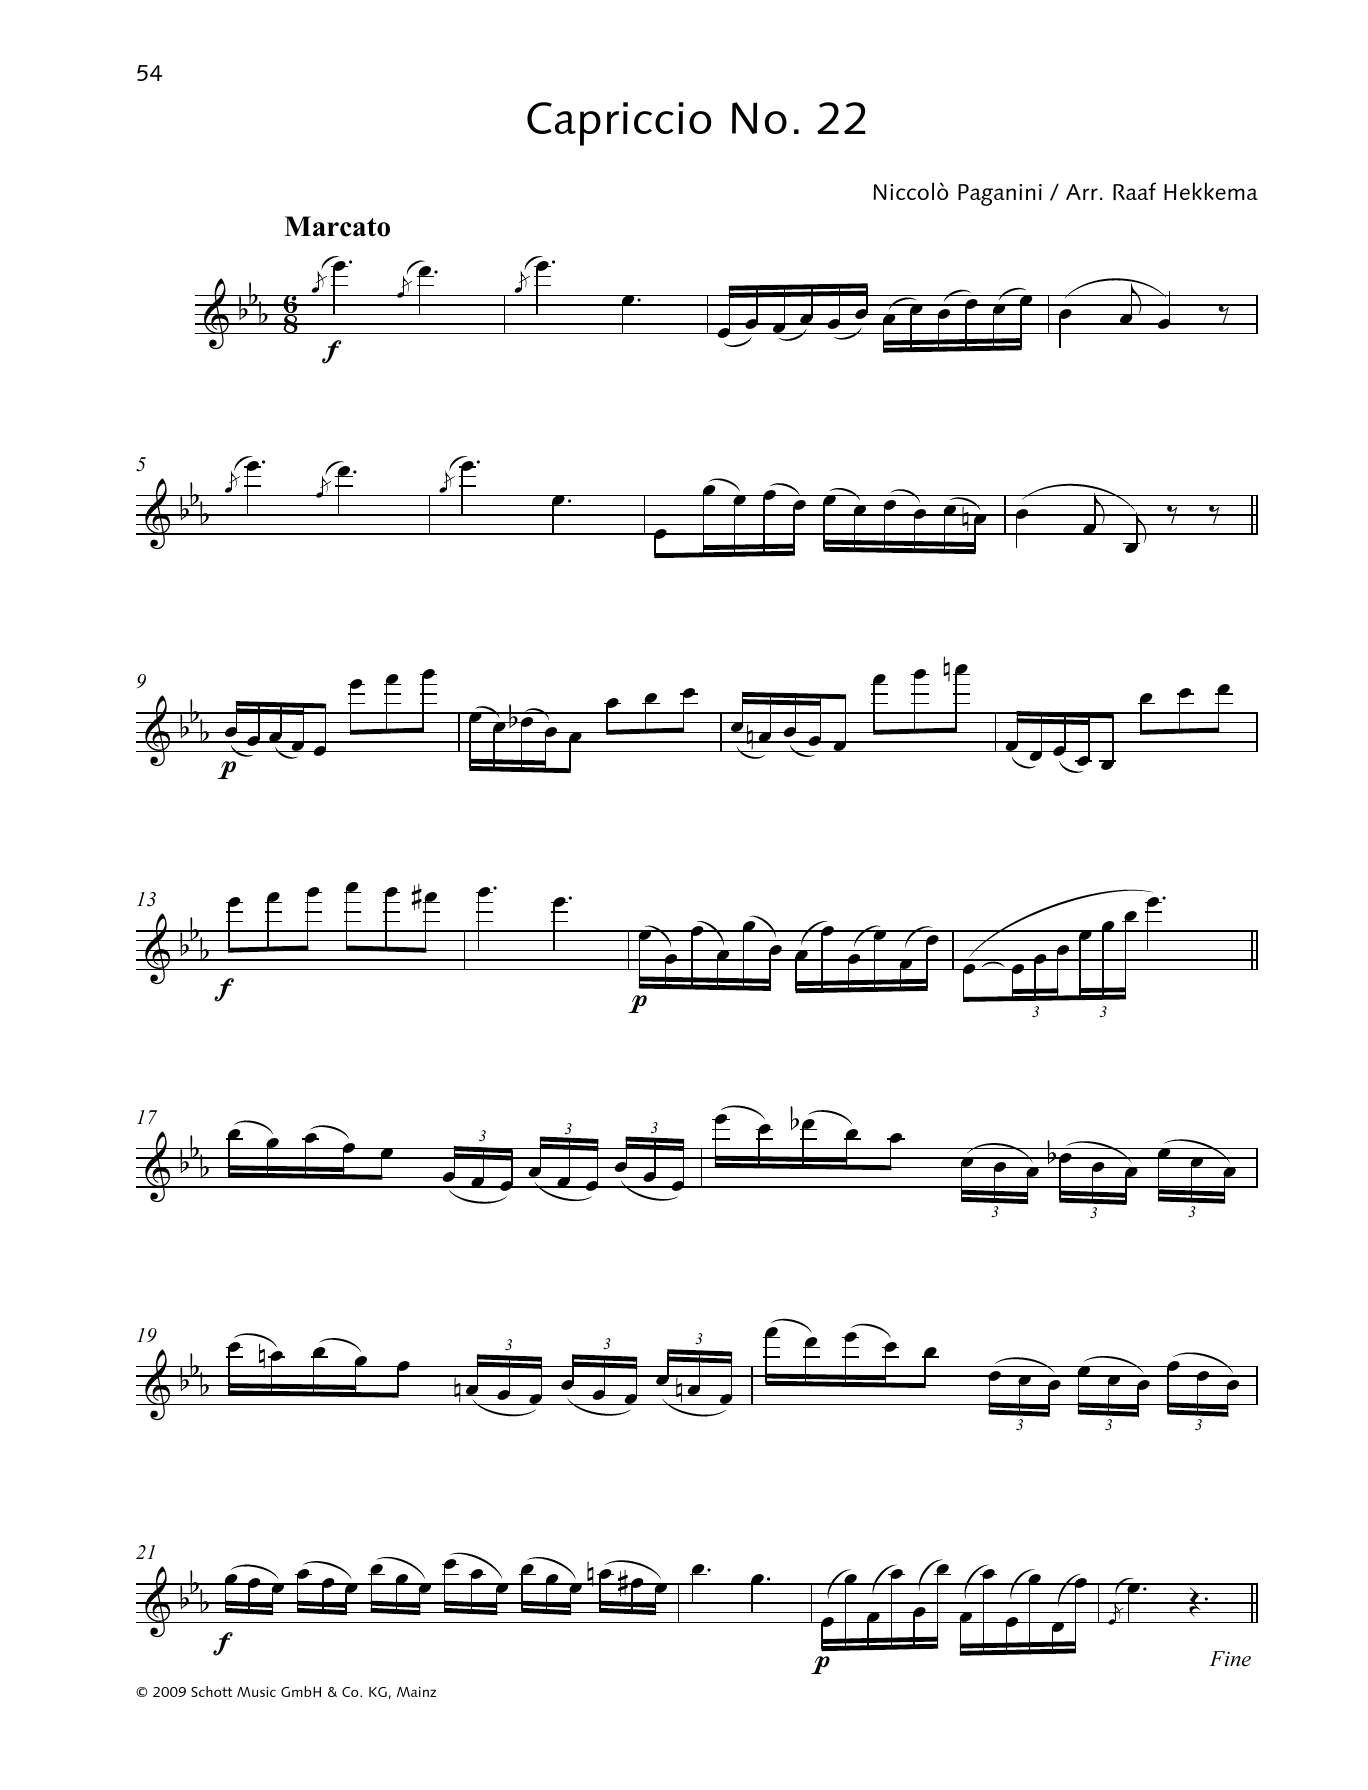 Download Niccolo Paganini Capriccio No. 22 Sheet Music